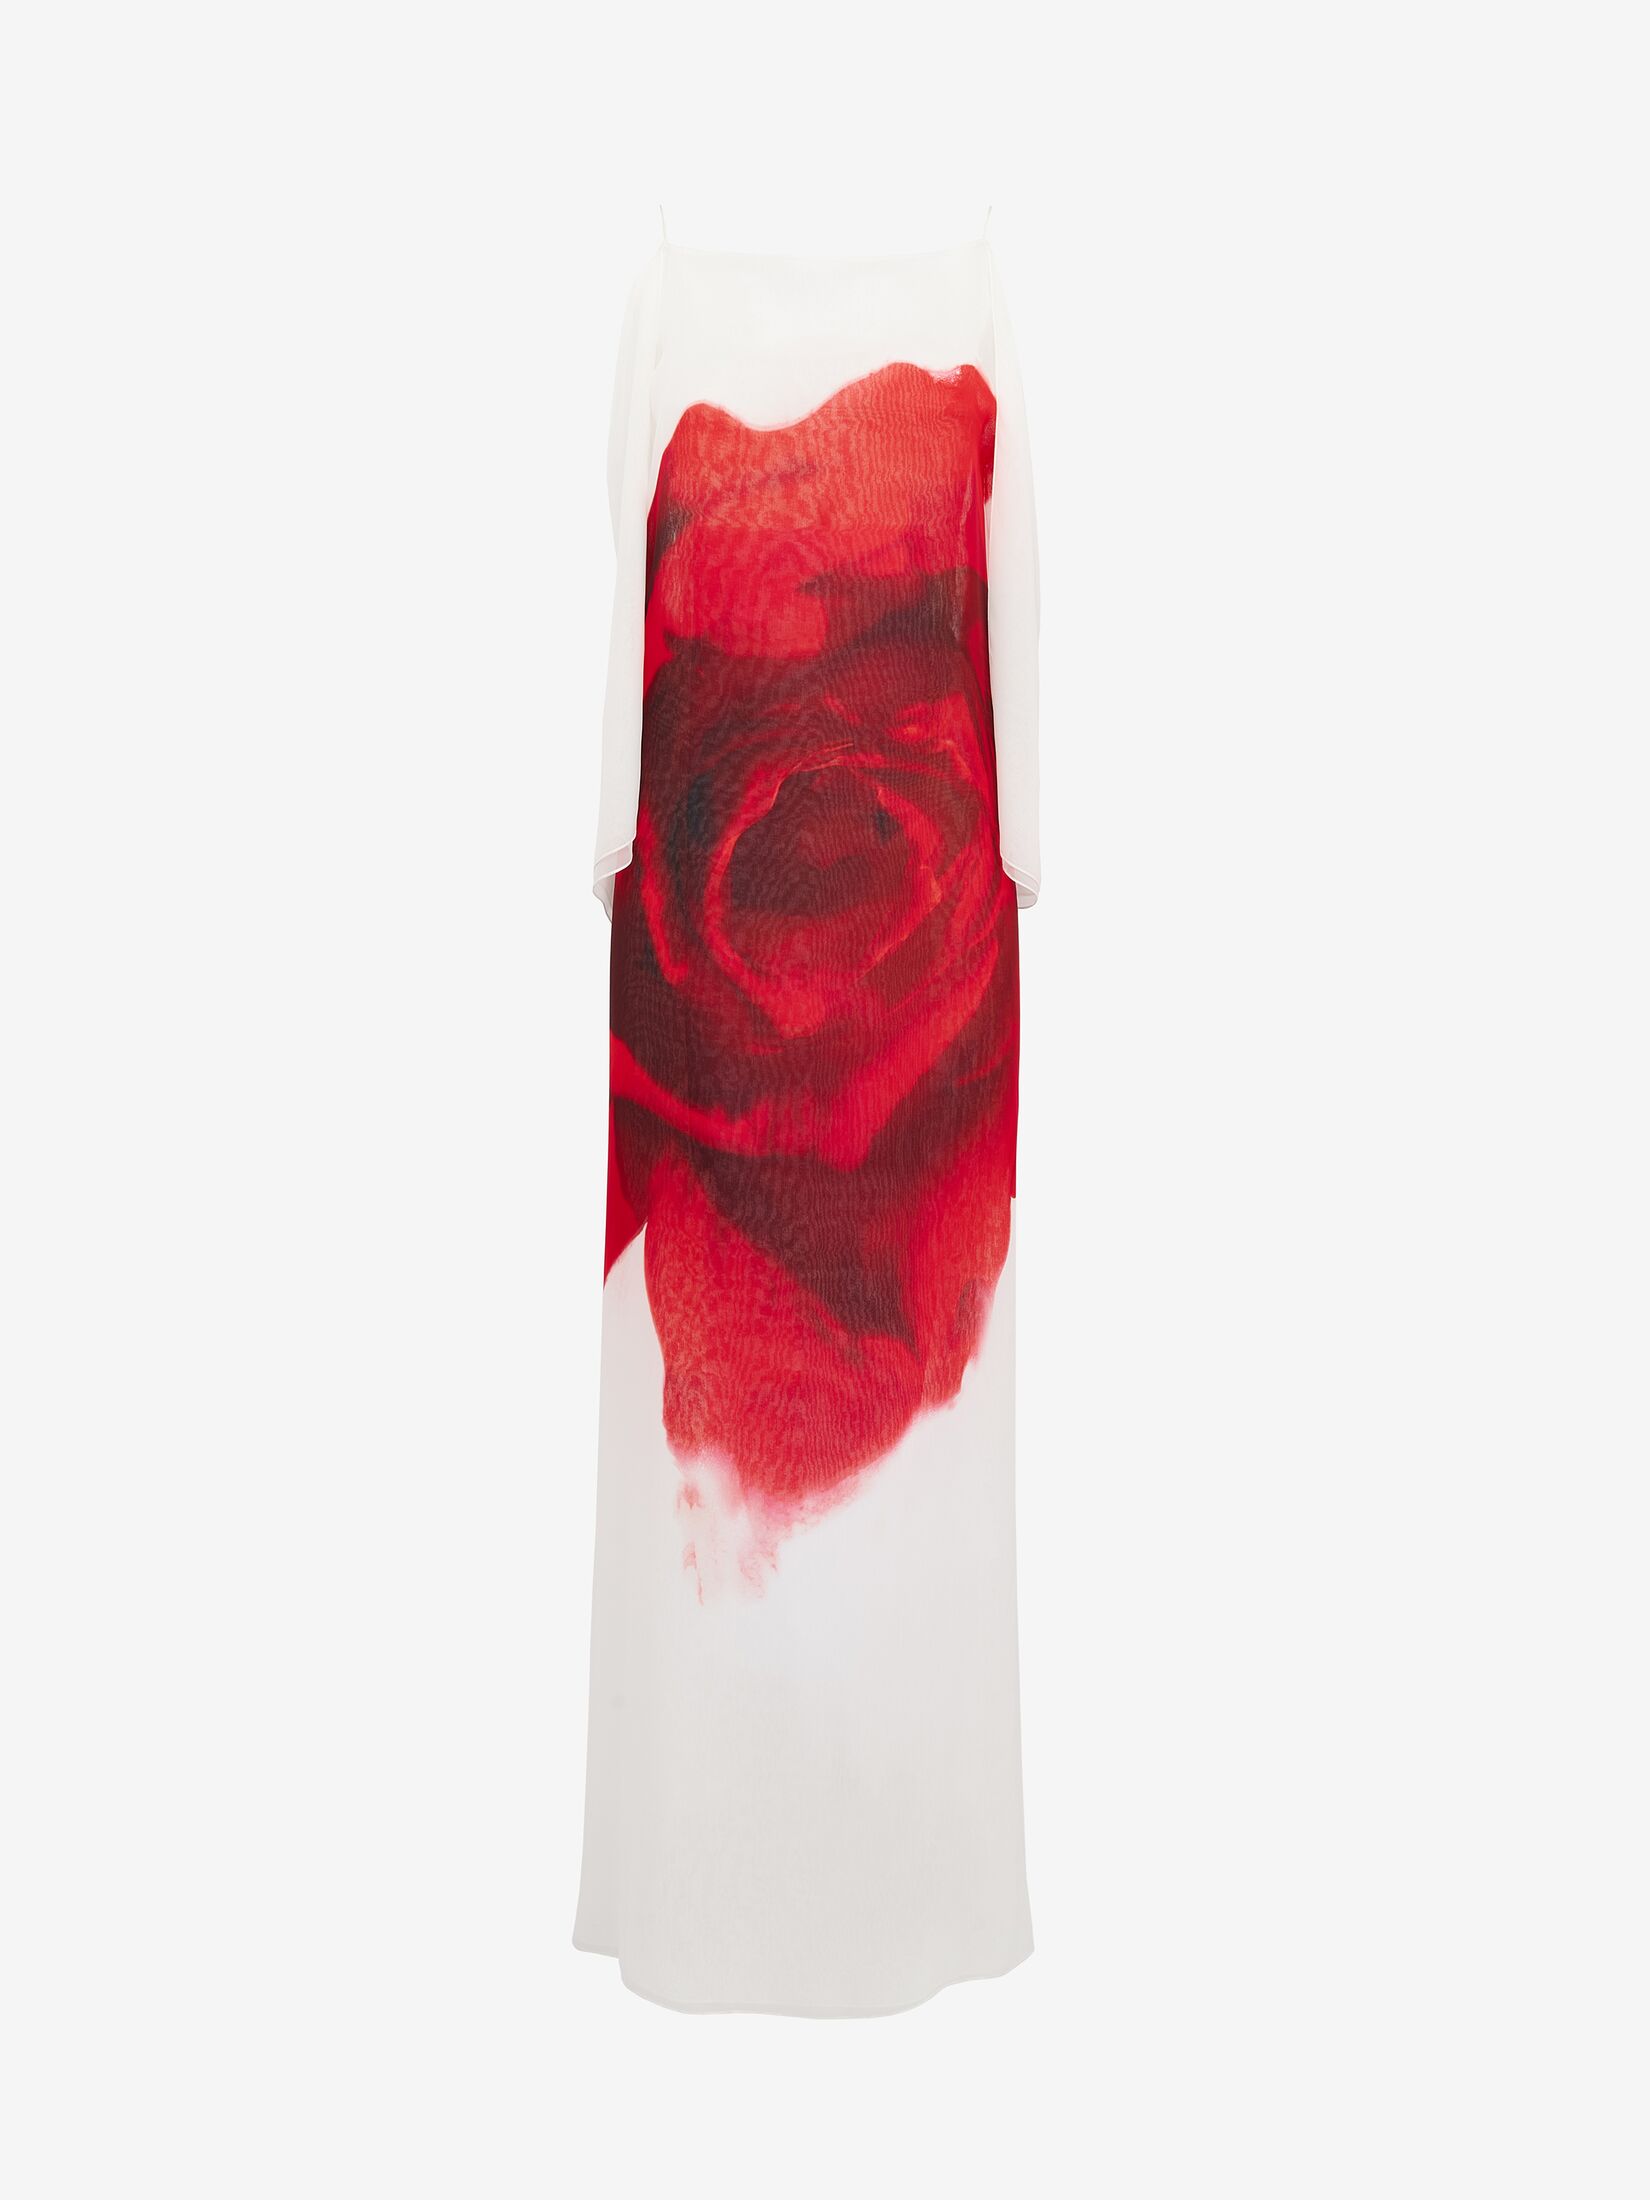 Trägerkleid aus Chiffon mit Bleeding Rose-Motiv